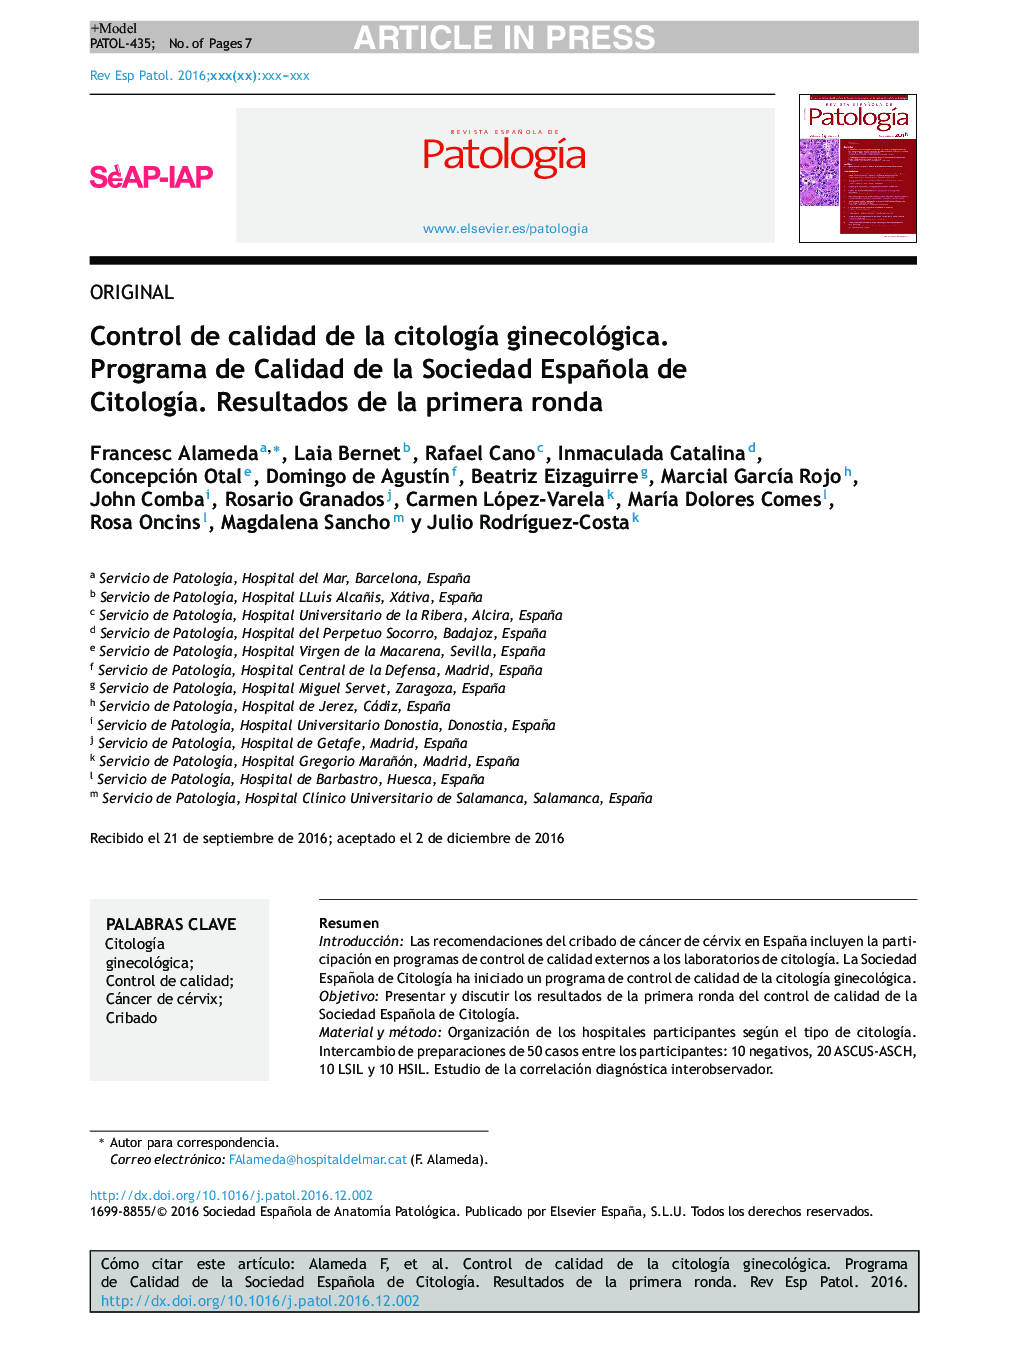 Control de calidad de la citologÃ­a ginecológica. Programa de Calidad de la Sociedad Española de CitologÃ­a. Resultados de la primera ronda